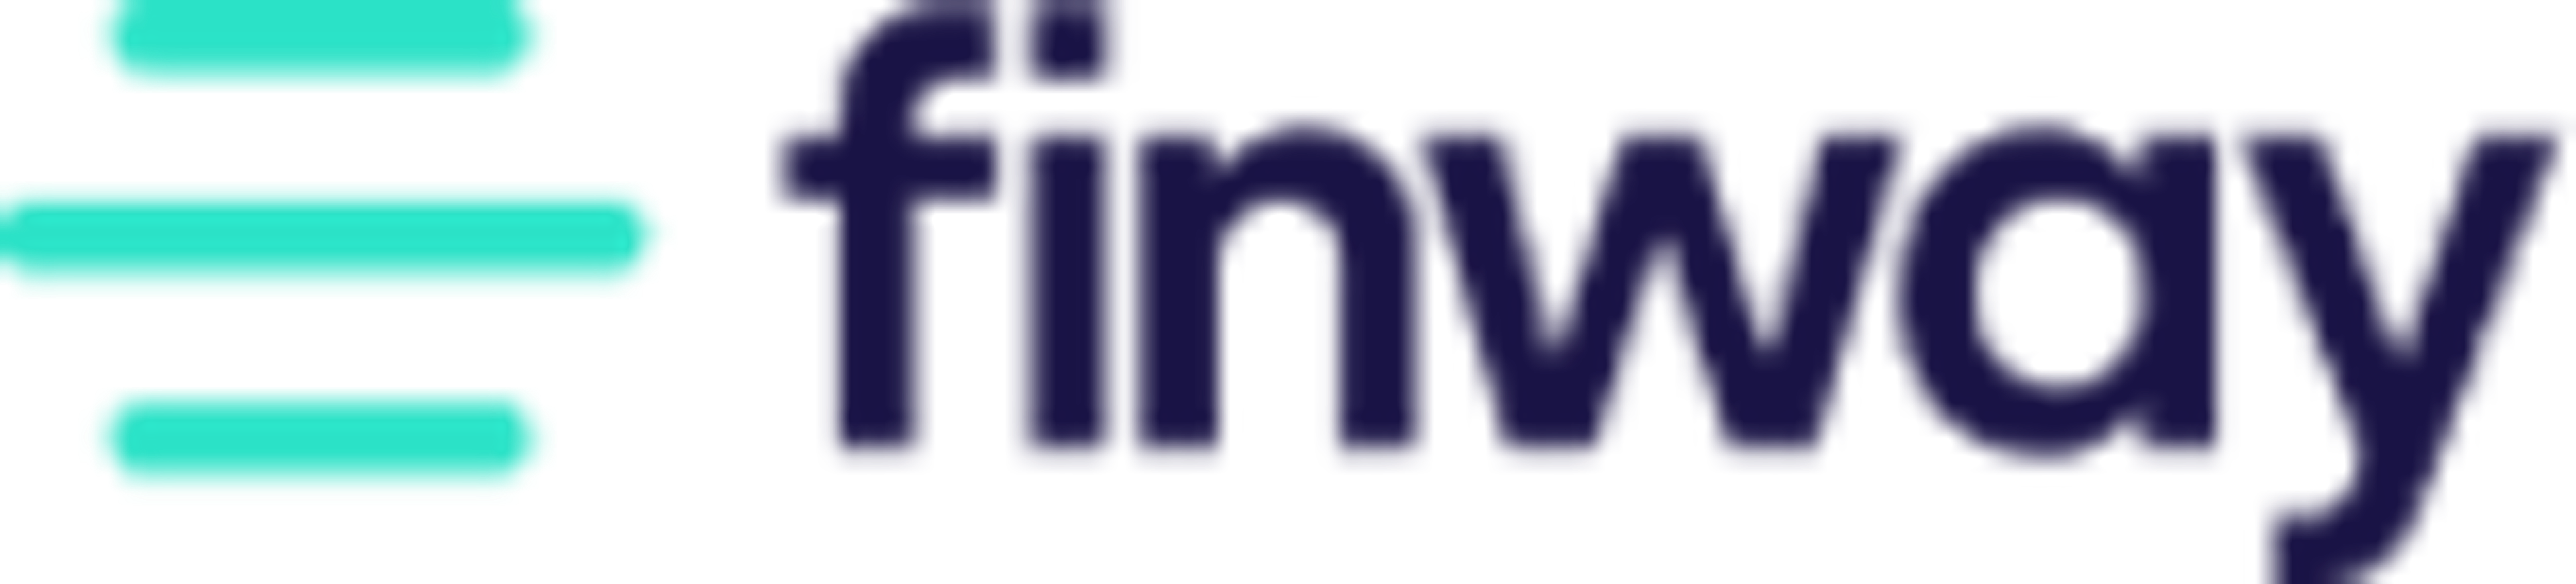 finway Logo